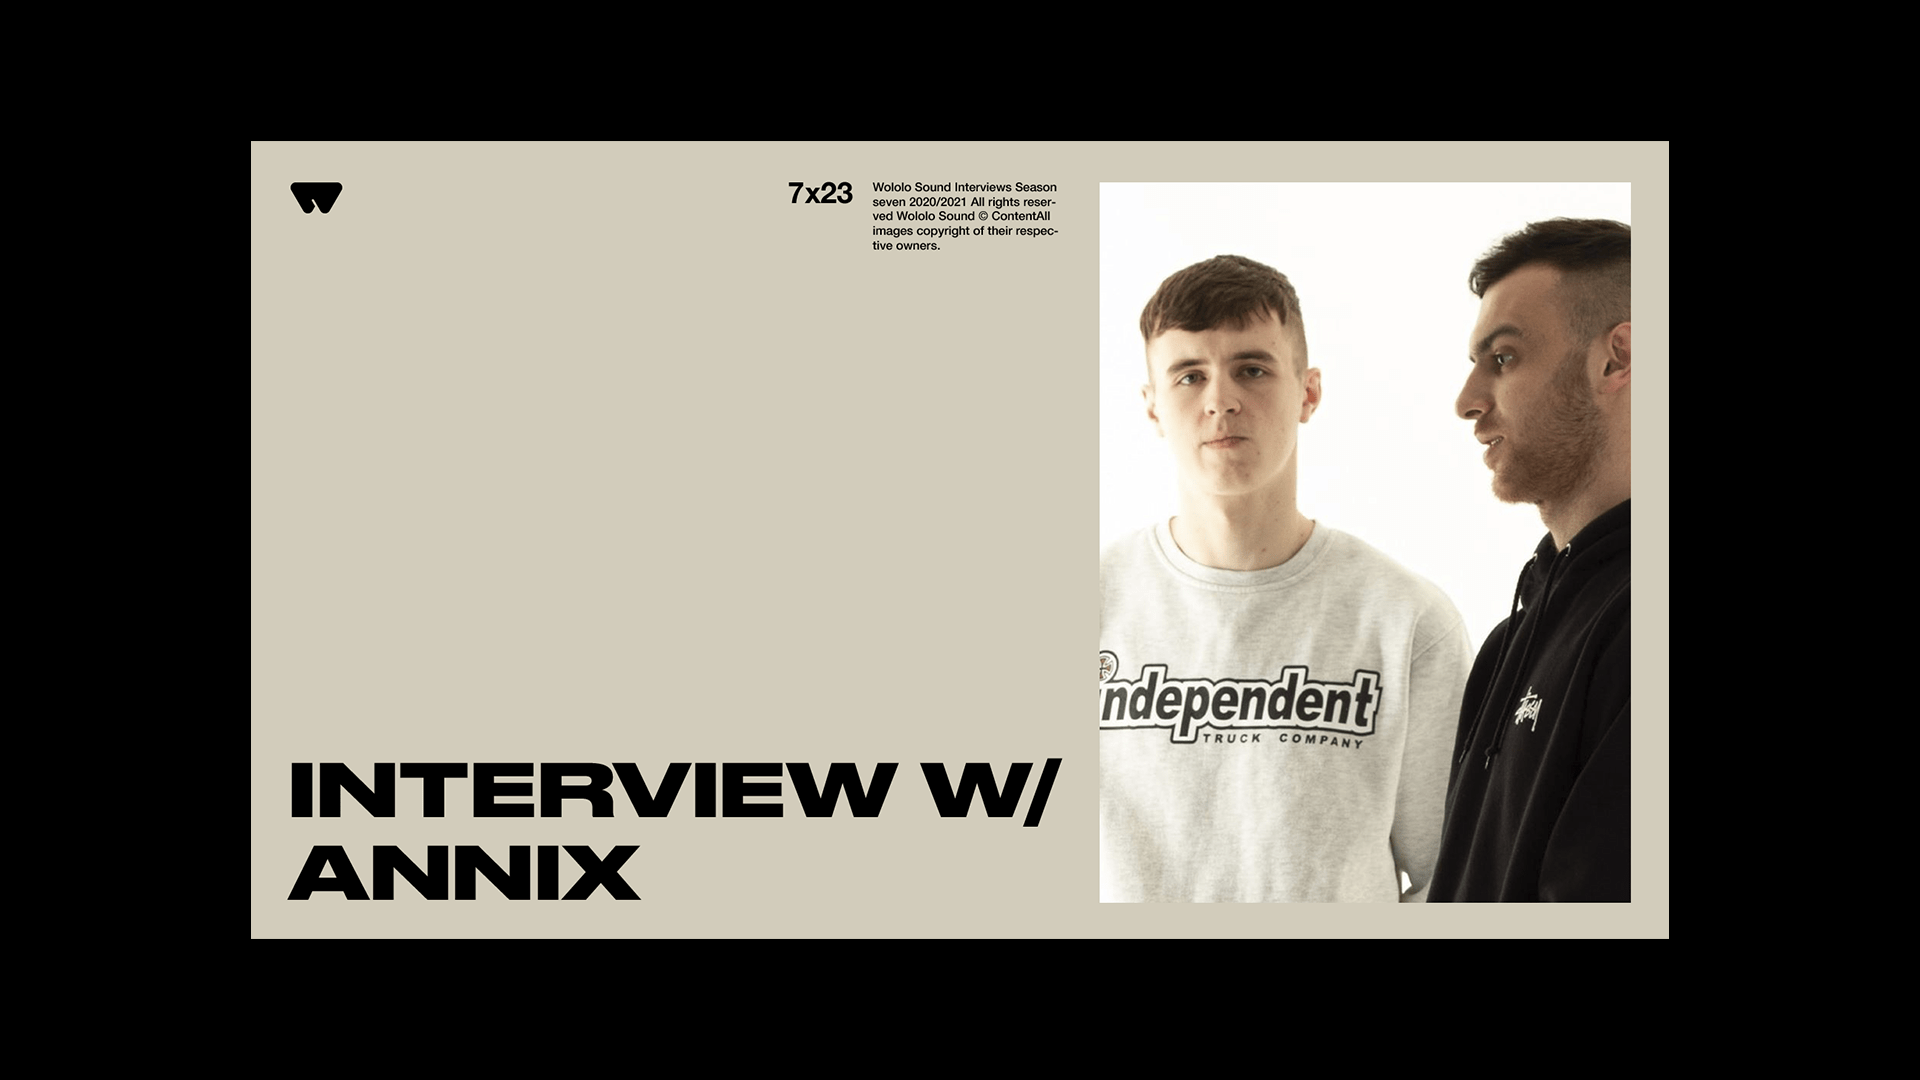 ANNIX INTERVIEW